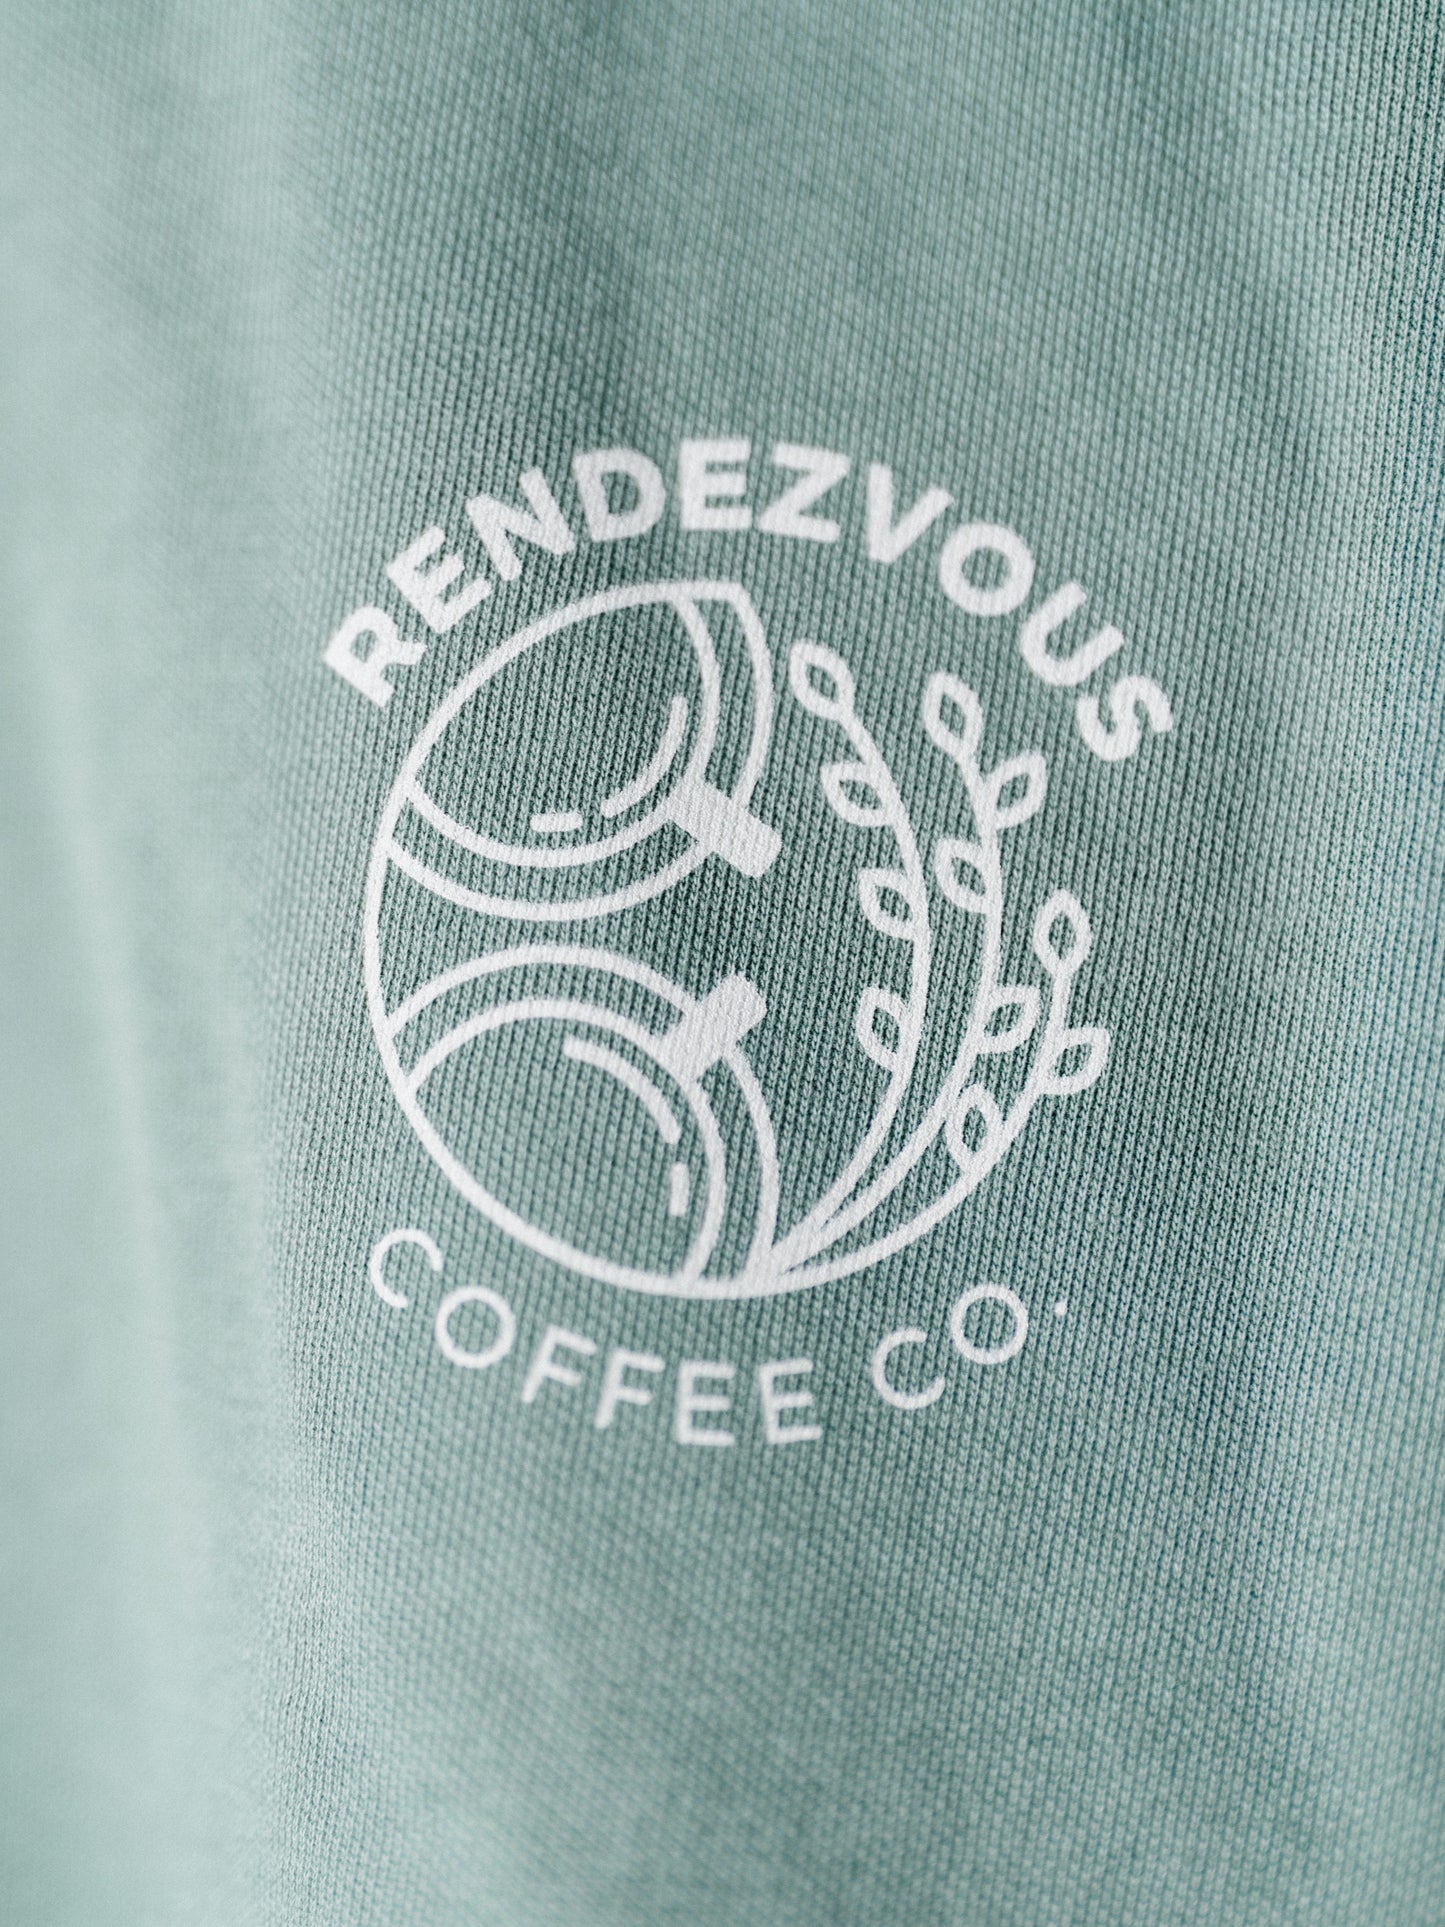 Rendezvous Point Sweatshirt